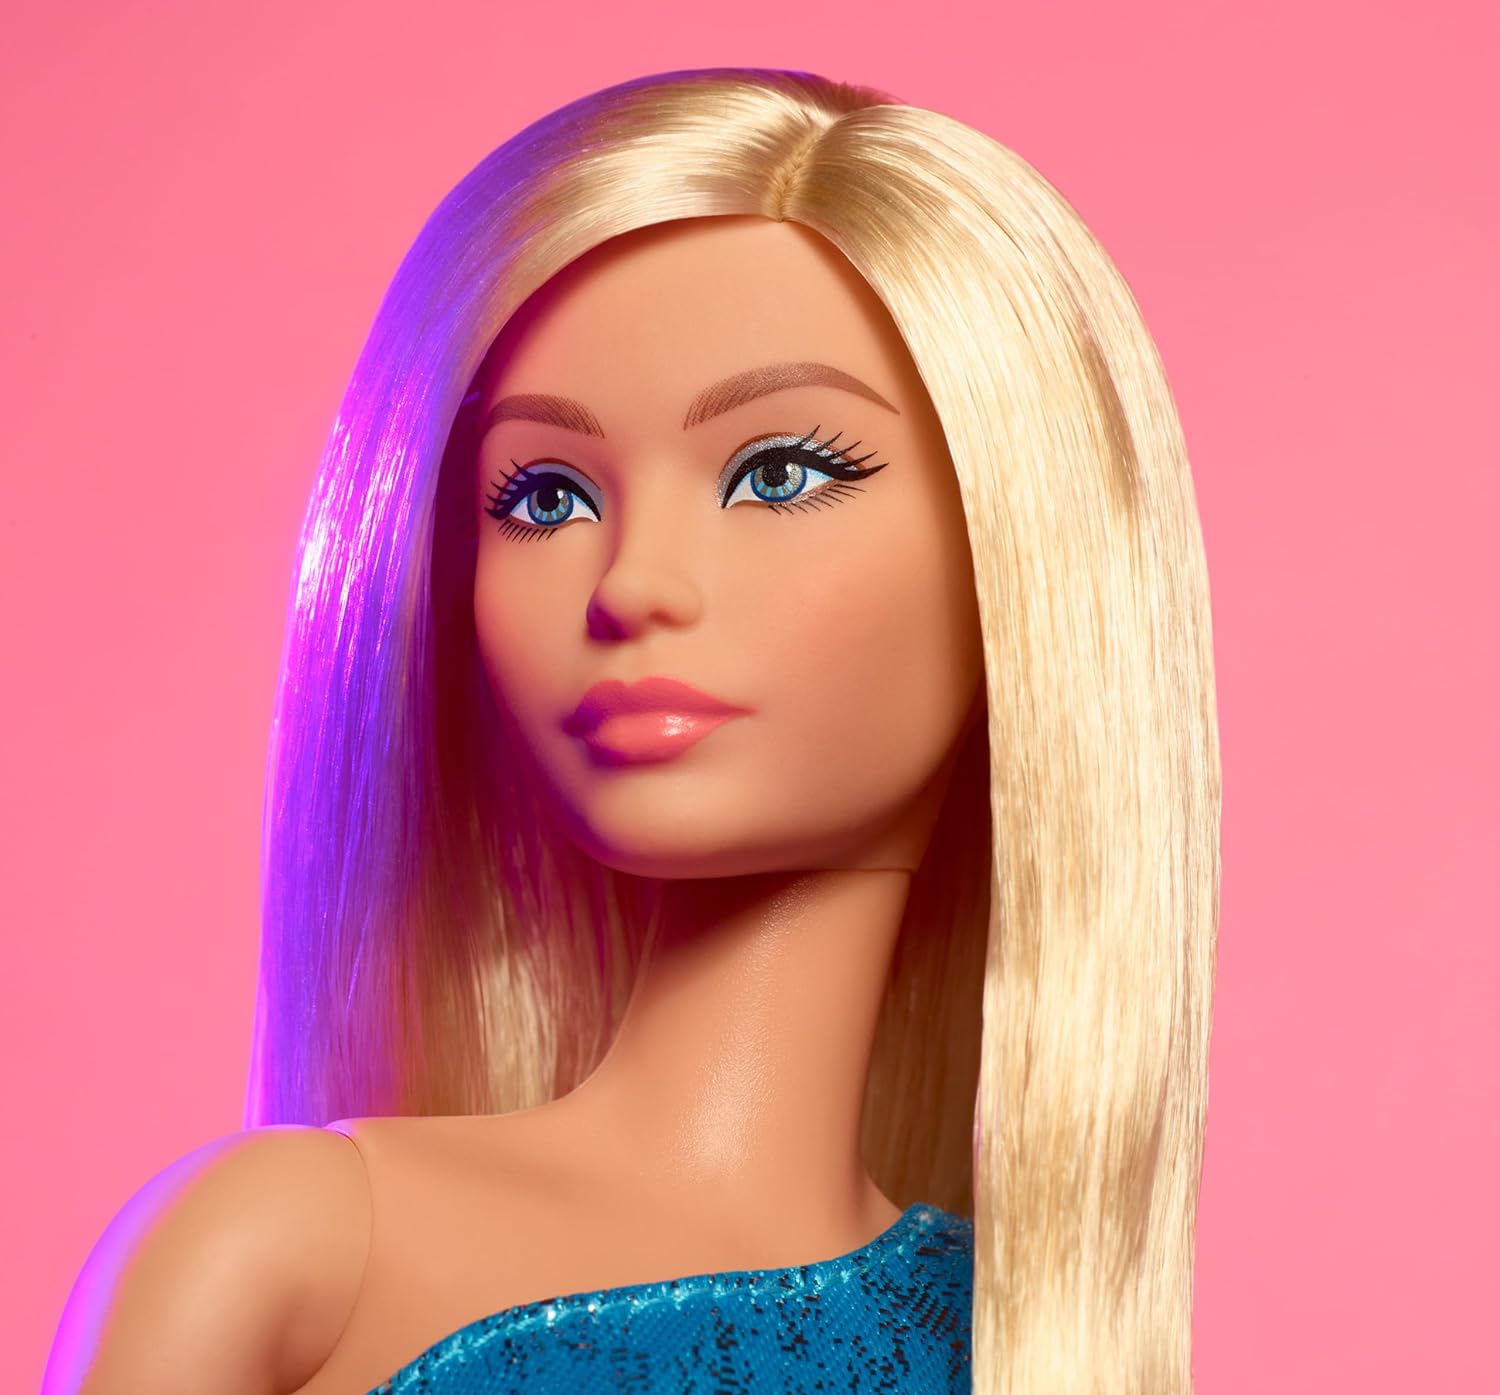 دمية Barbie Looks، رقم 23 القابلة للتجميع بشعر أشقر رمادي وأزياء Y2K الحديثة، فستان أزرق معدني بكتف واحد مع كعب بأربطة